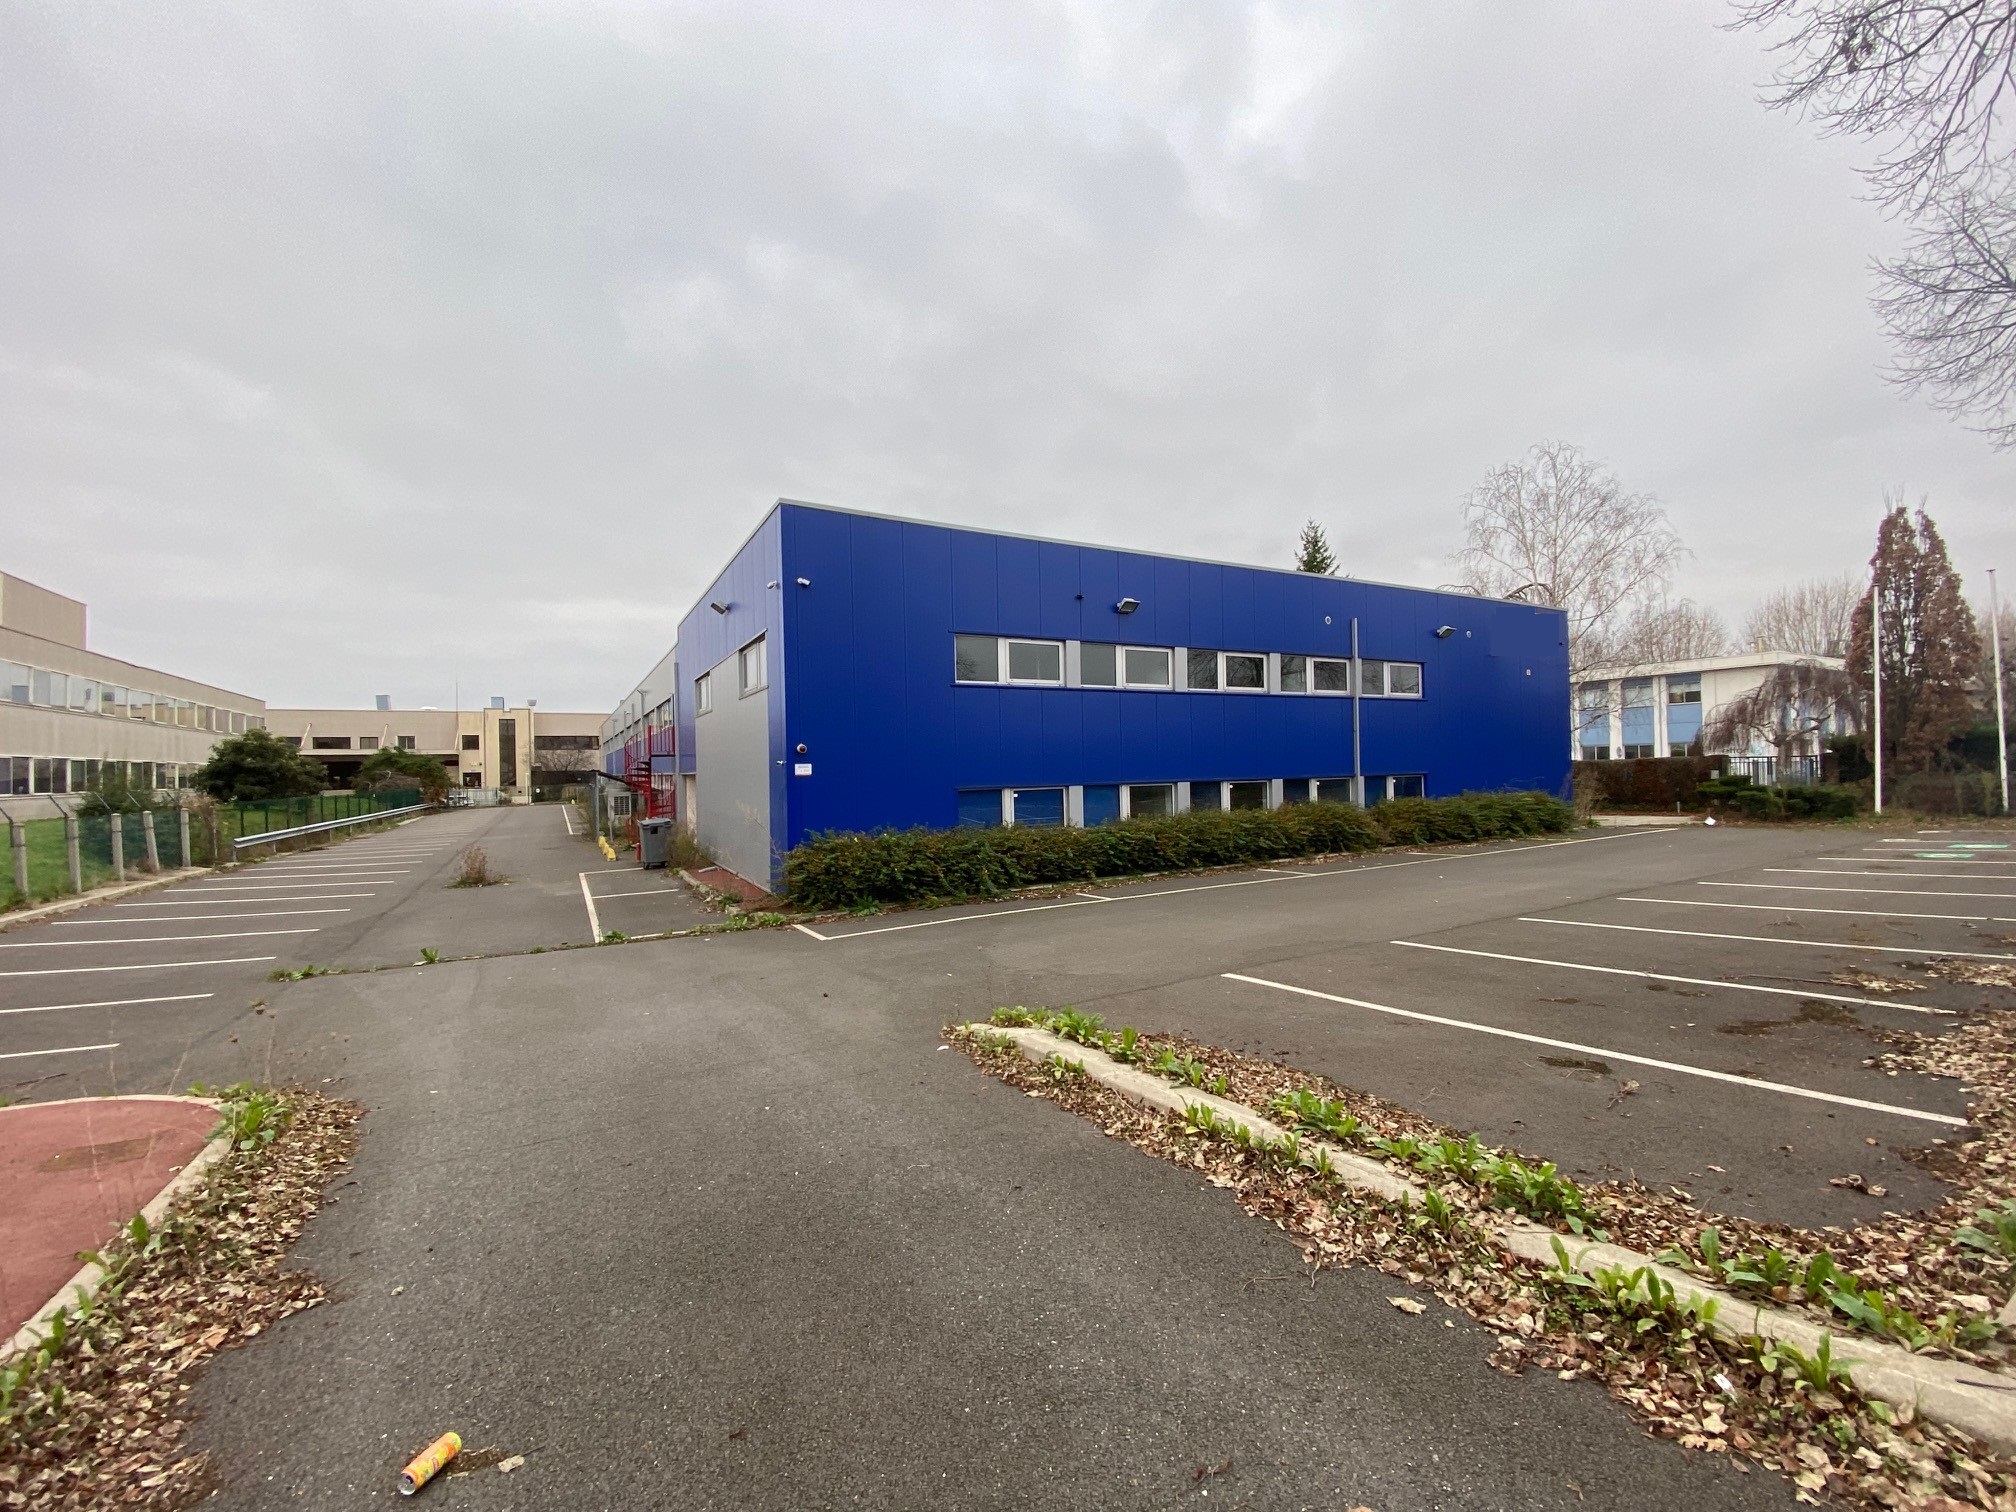 Entrepôt de messagerie à louer dans le Val-d’Oise (95) à Bezons - 2361 m2